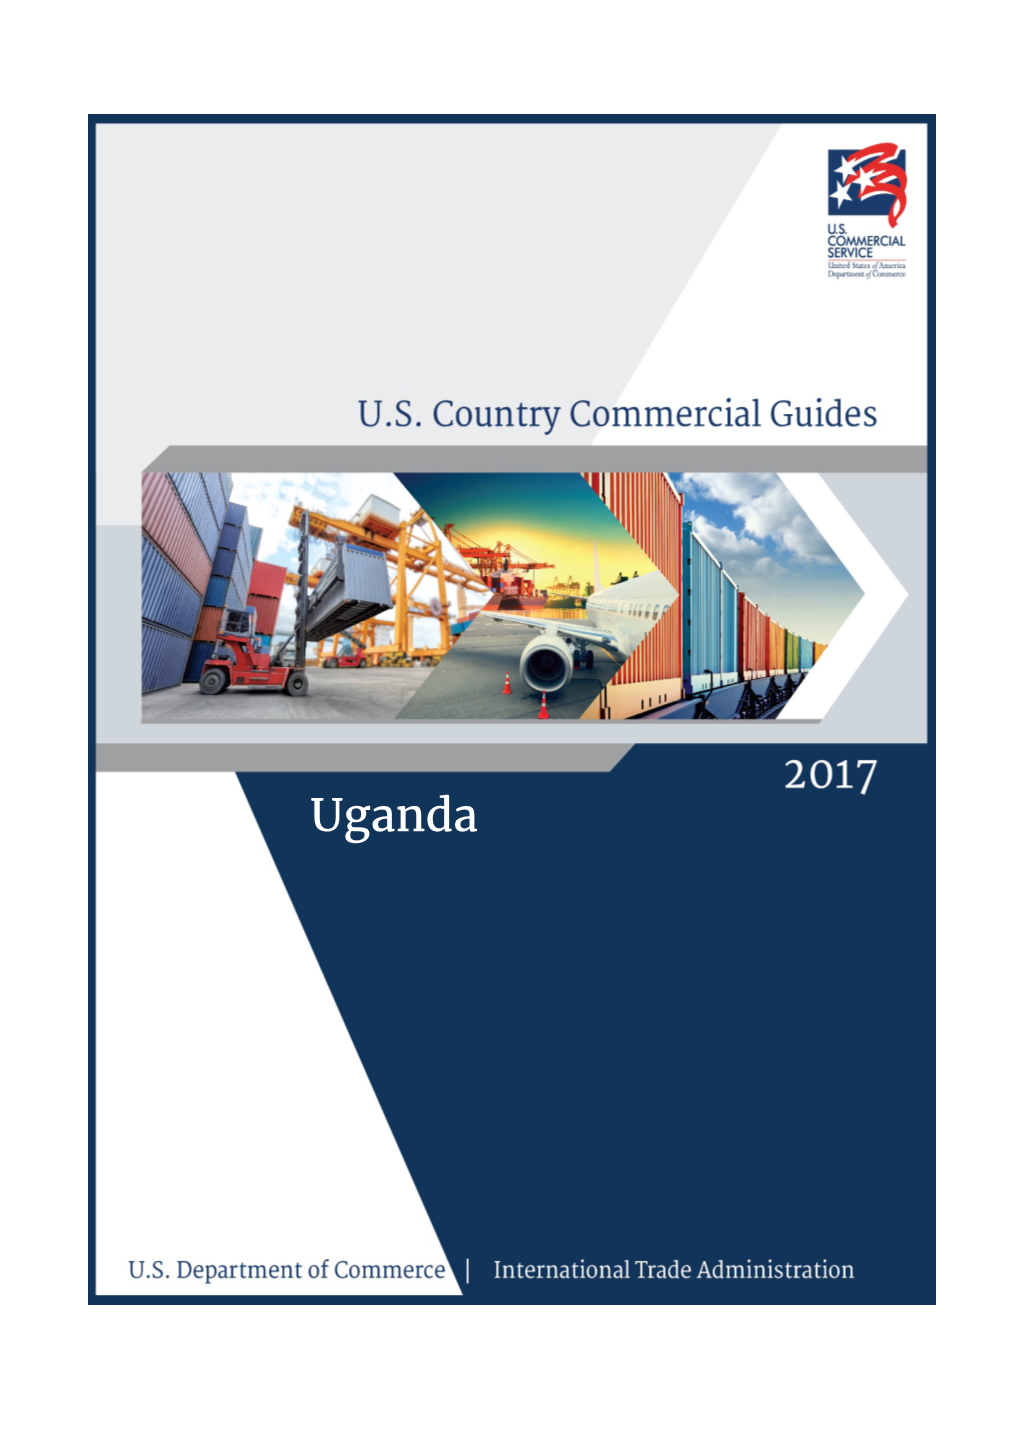 Uganda Commercial Guide